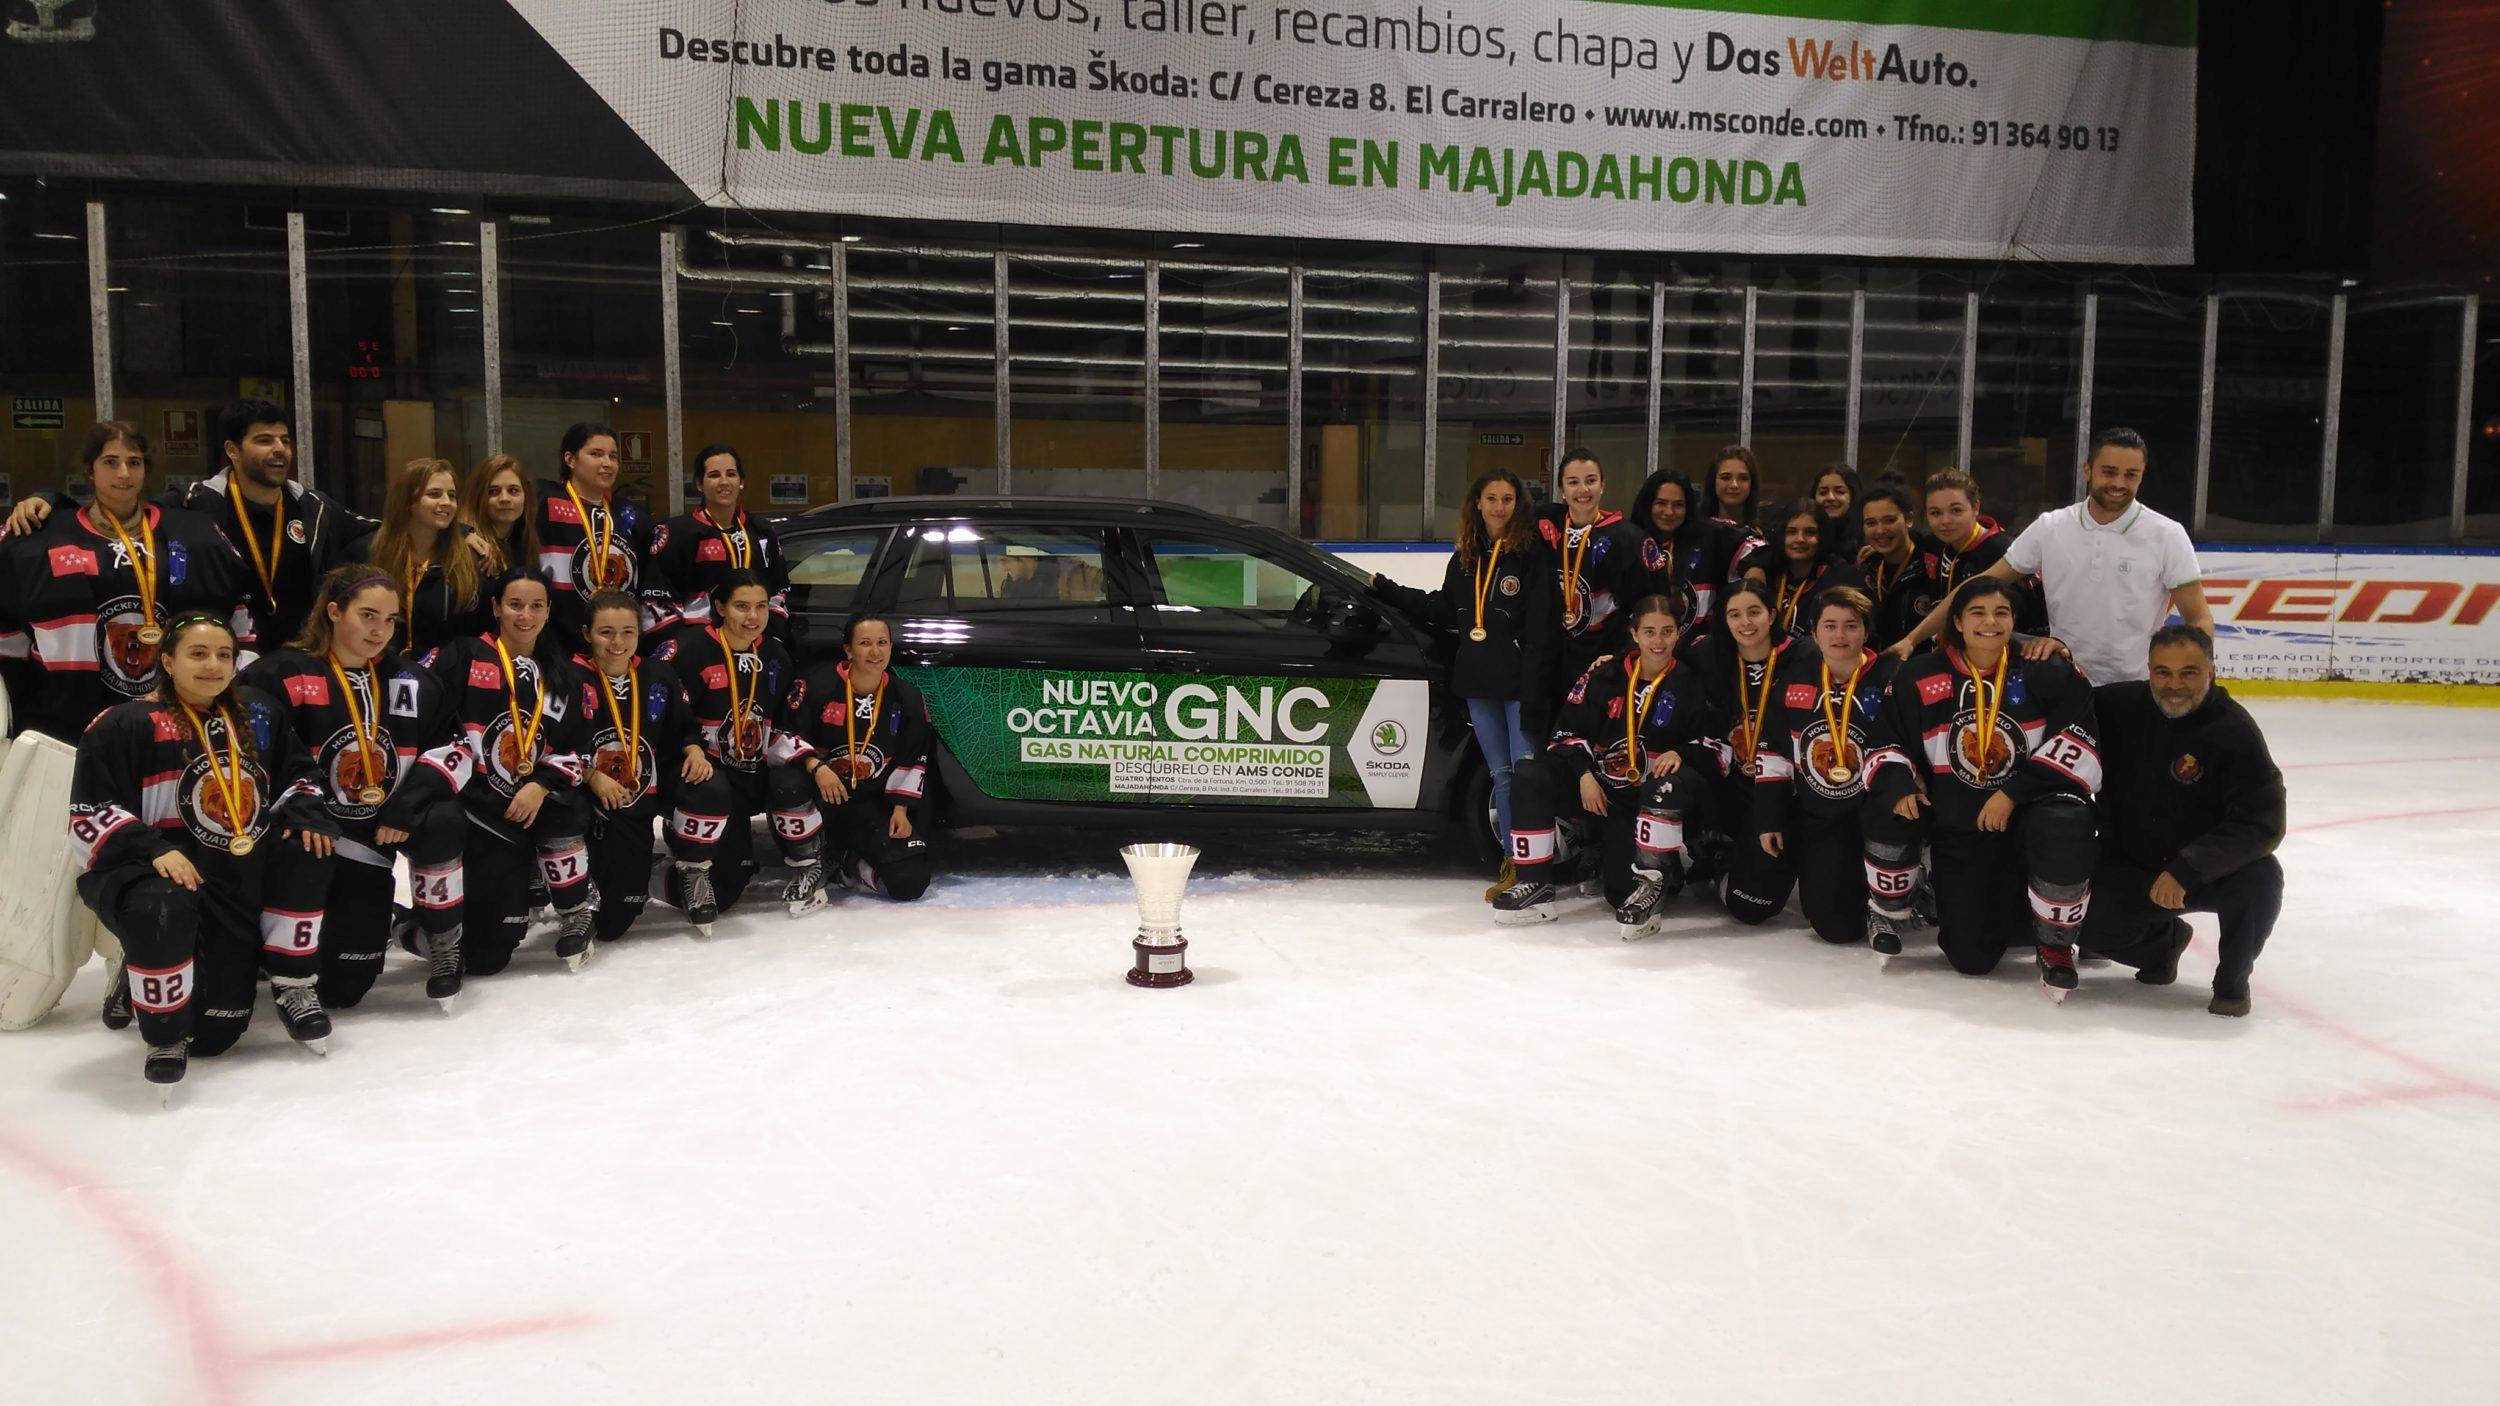 , SAD Majadahonda vencedor de la Liga Nacional de Hockey Hielo Femenina, Real Federación Española Deportes de Hielo